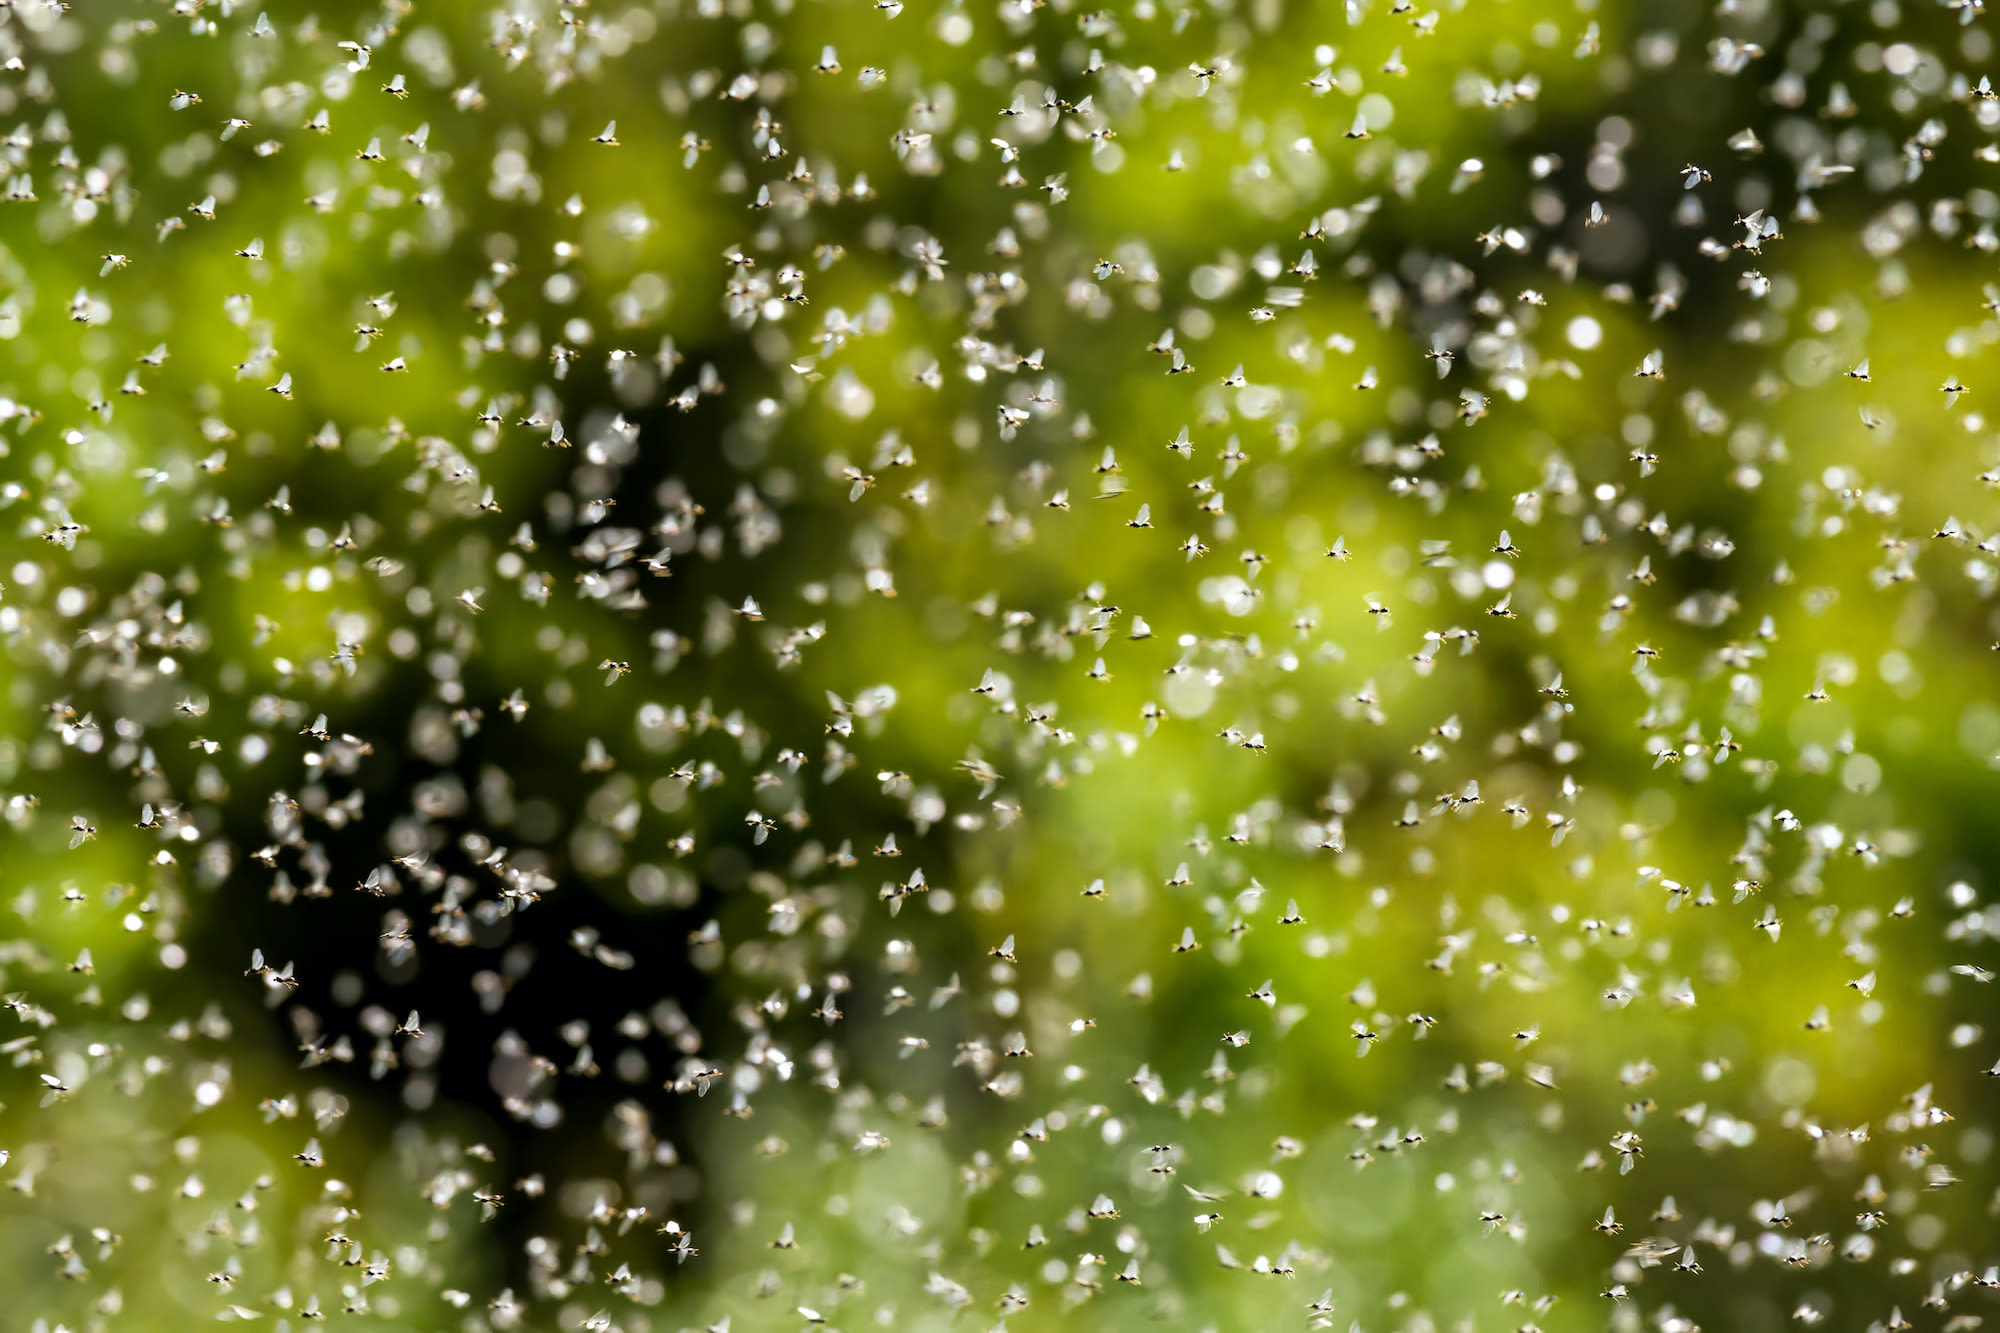 Zwerm van duizenden vliegende mieren in de lucht, beeld: AdobeStock Arpad 